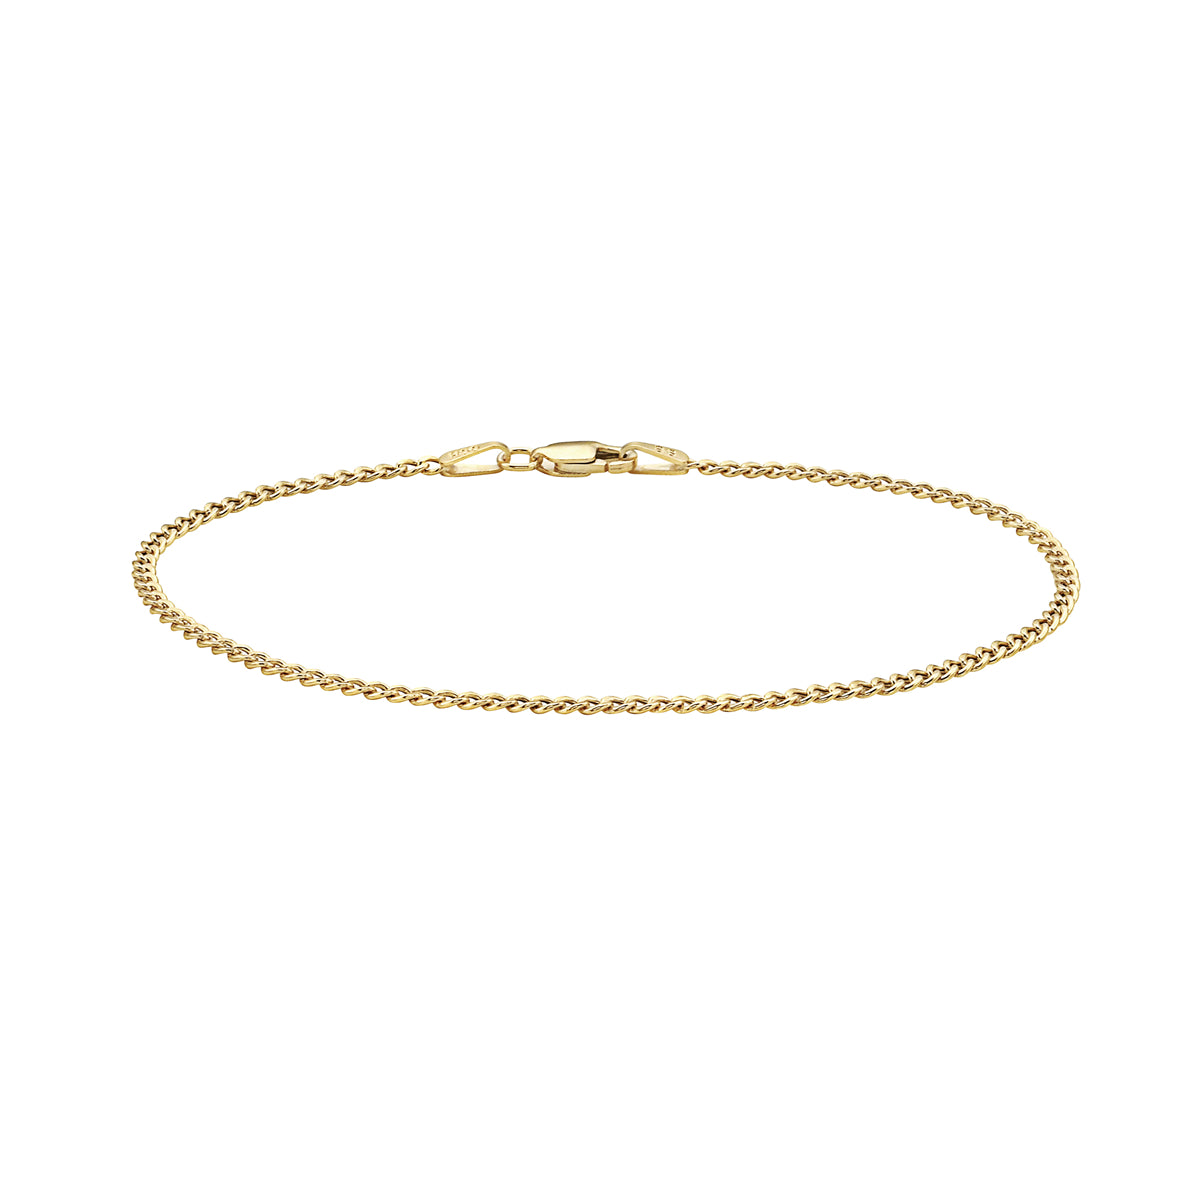 10K Gold Cuban/Curb Link Chain Bracelet